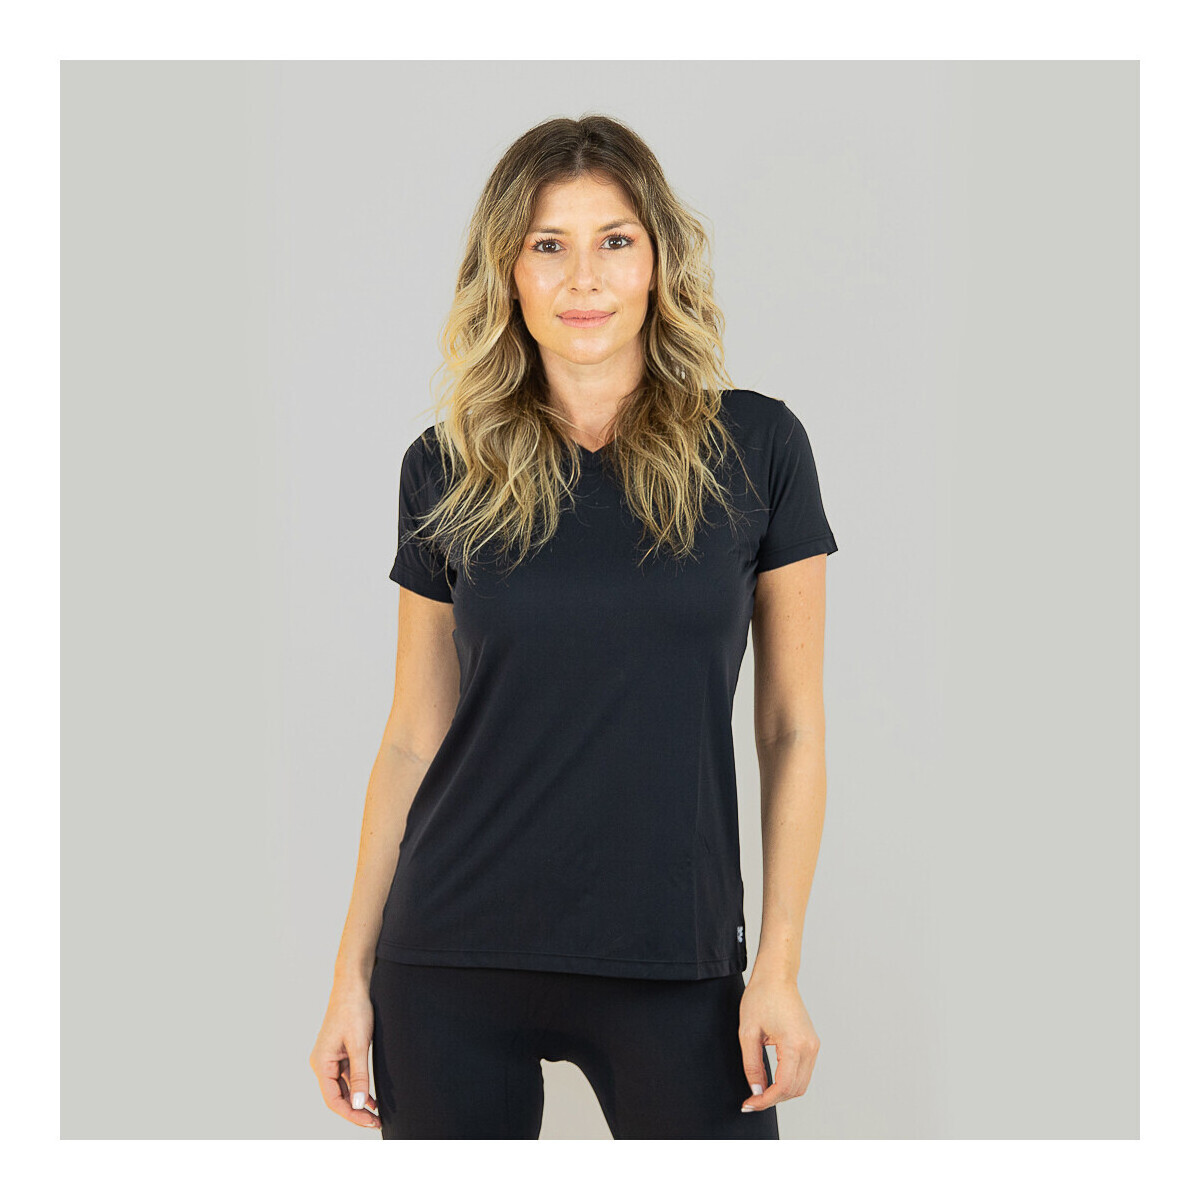 Vêtements Femme T-shirts manches courtes Uv Line Classics Noir